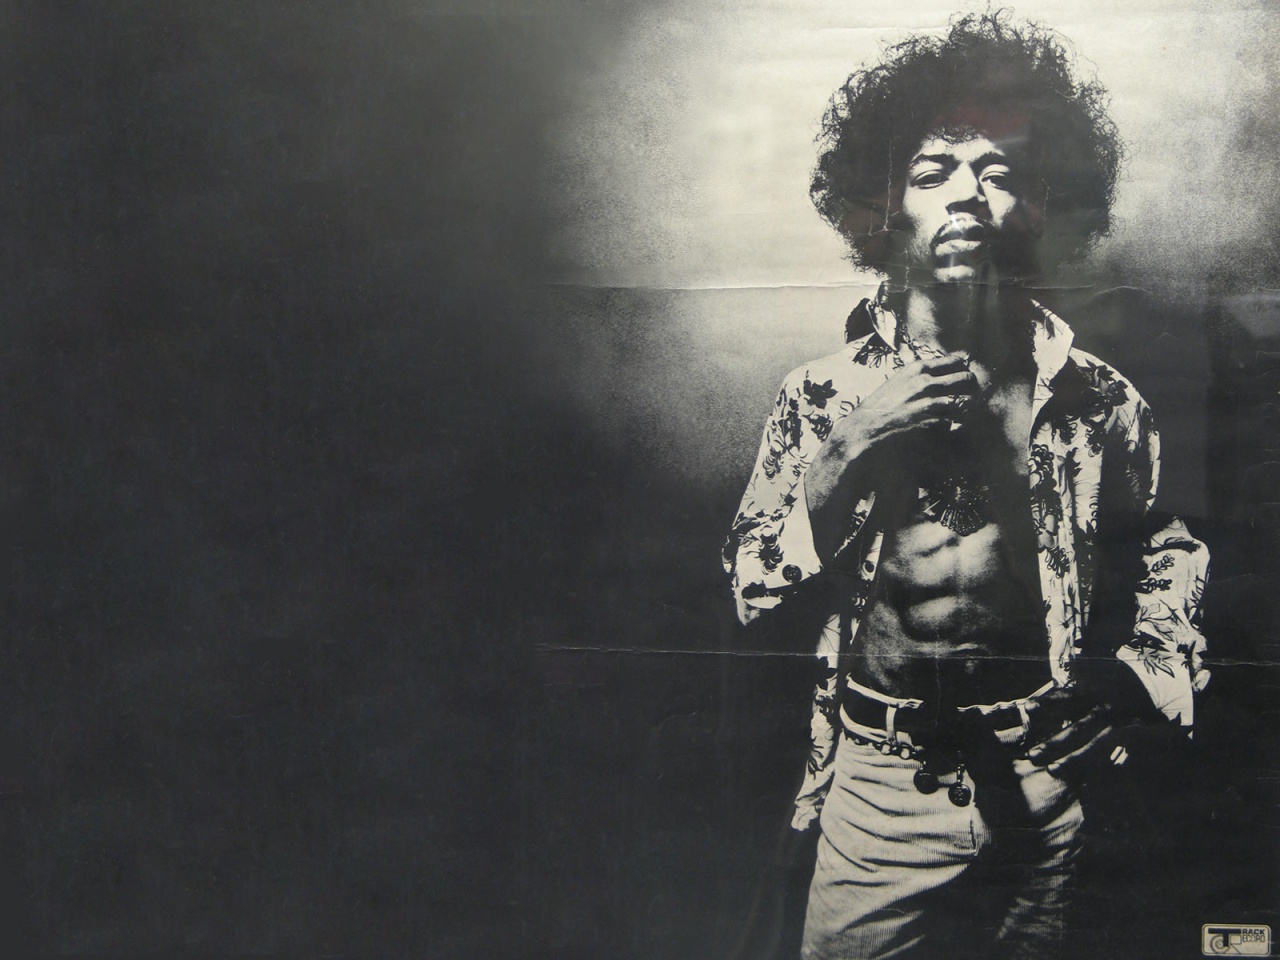 Jimi Hendrix Wallpapers Full HD QY3J162   4USkY